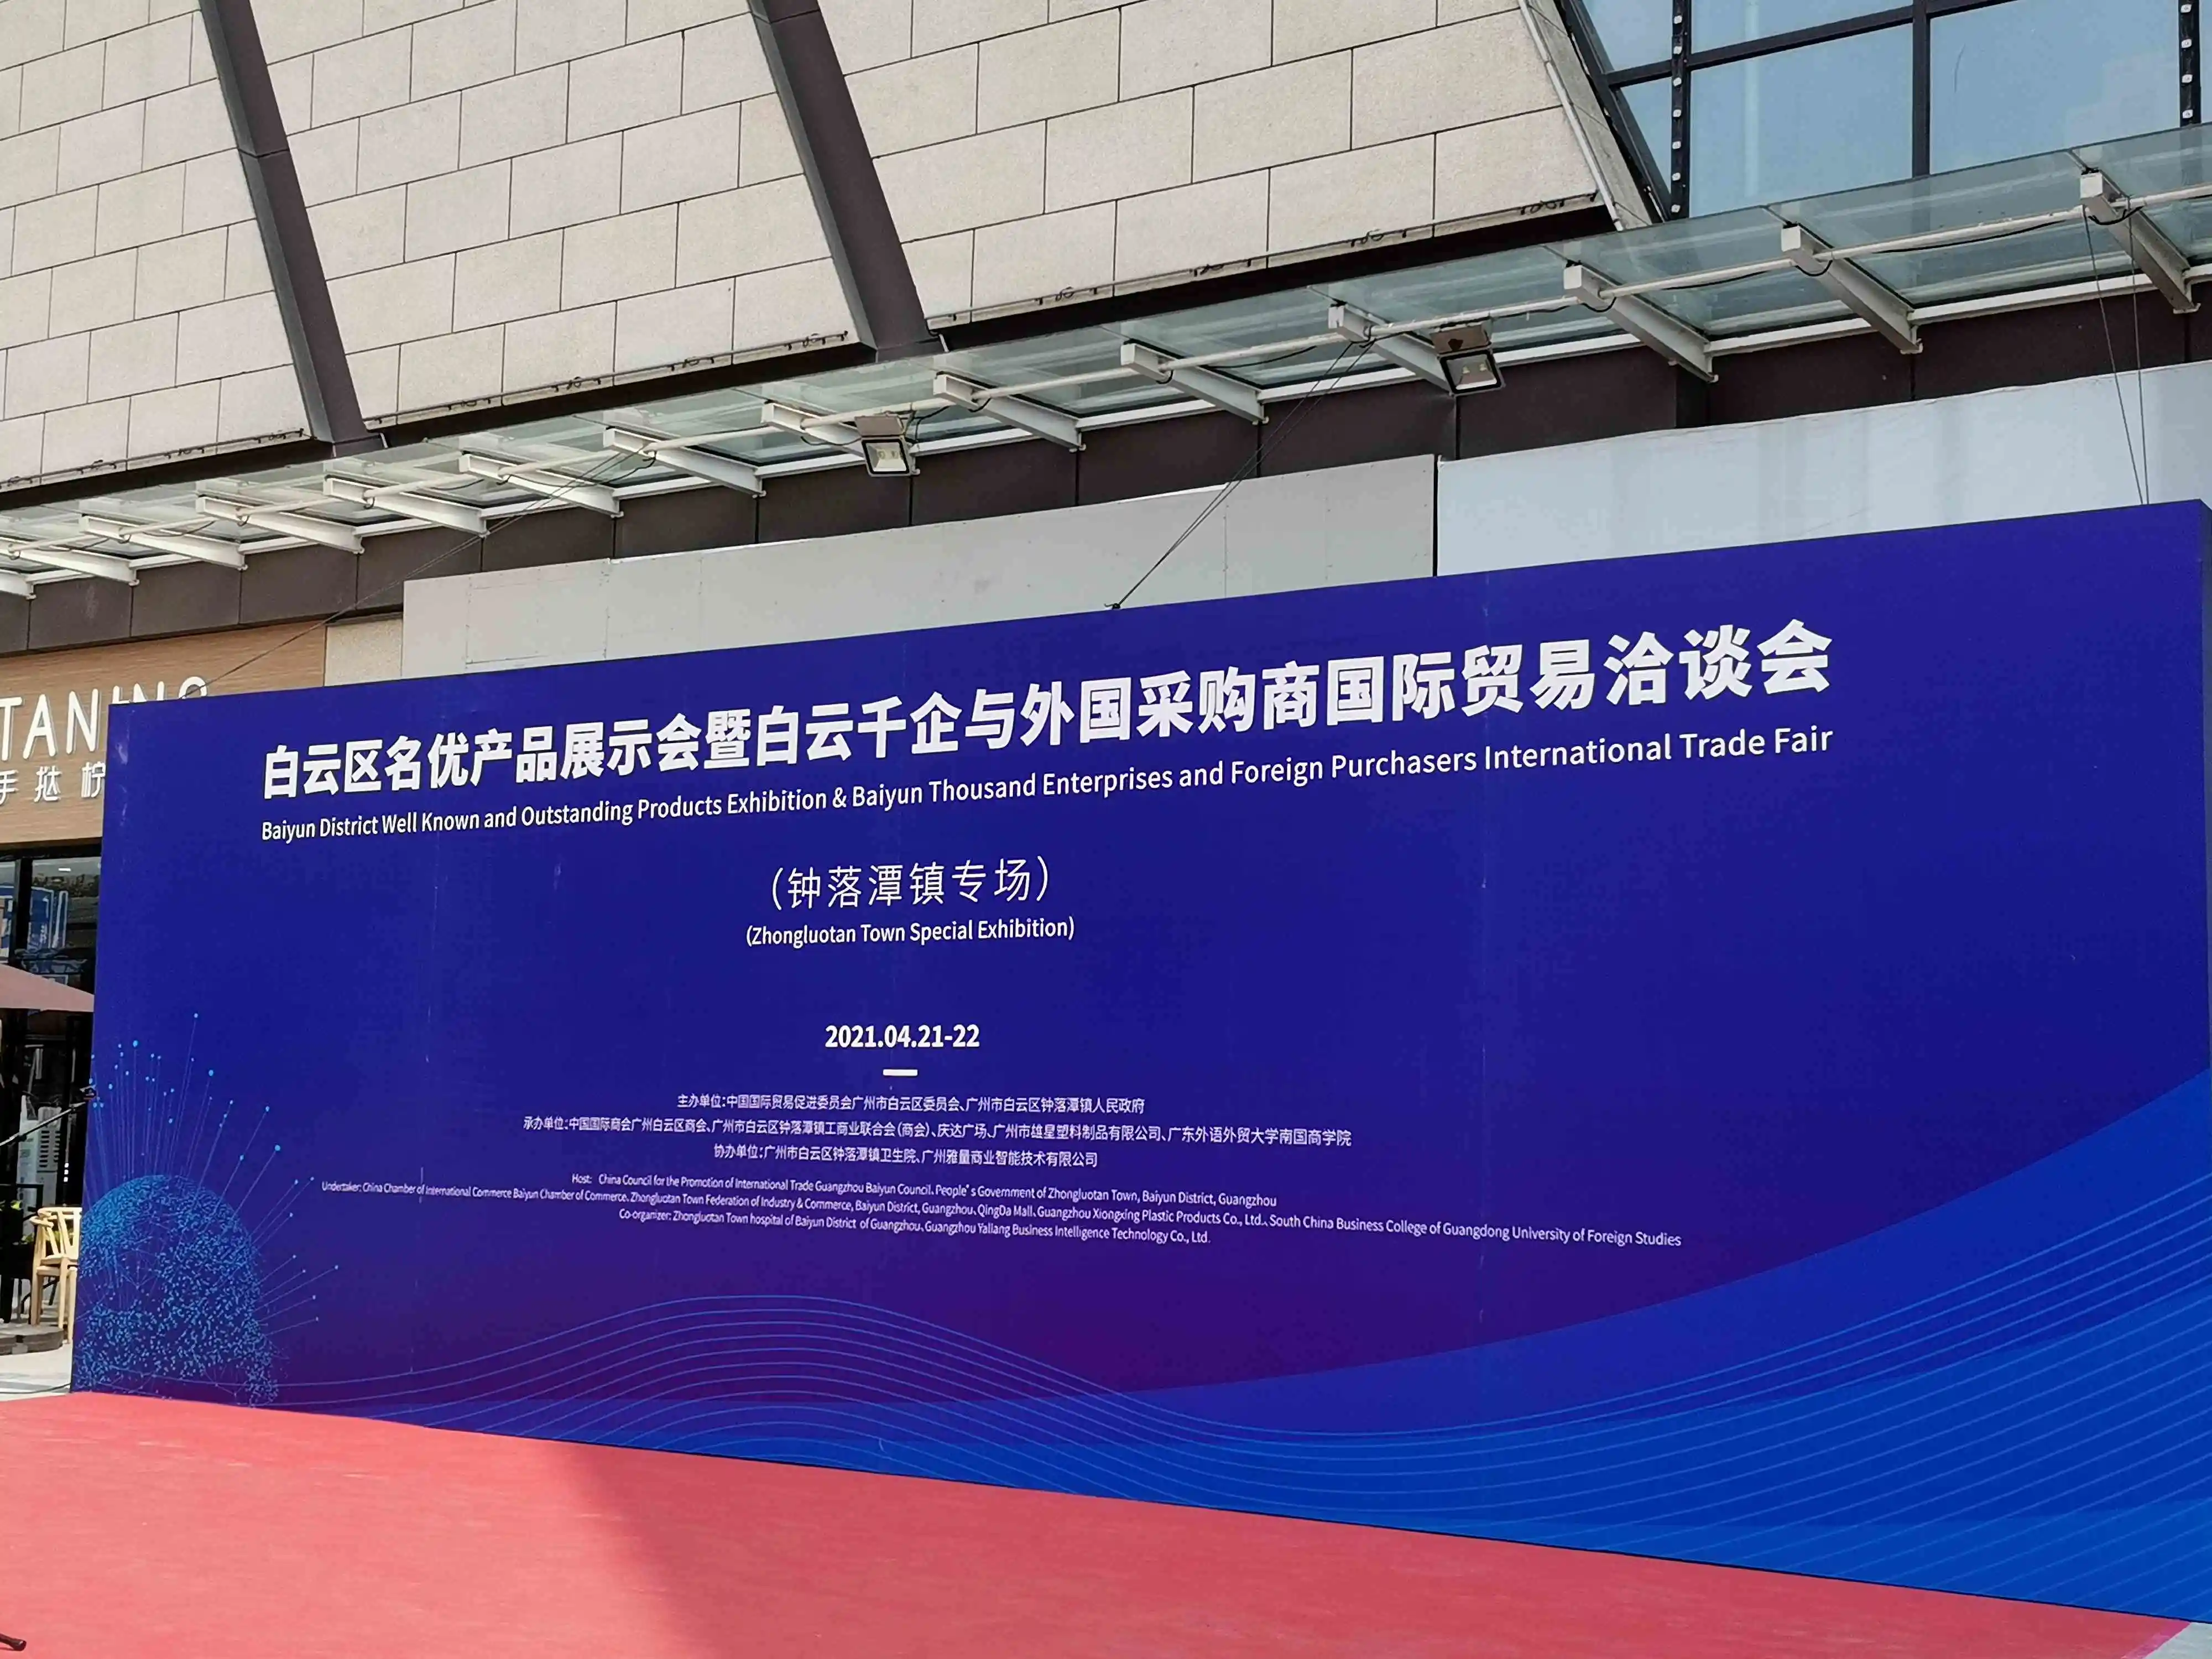 معرض منطقة بايون للمنتجات المعروفة والبارزة ومعرض باييون ألف شركة والمشترين الأجانب التجاري الدولي - معرض Zhongluotan Town الخاص.